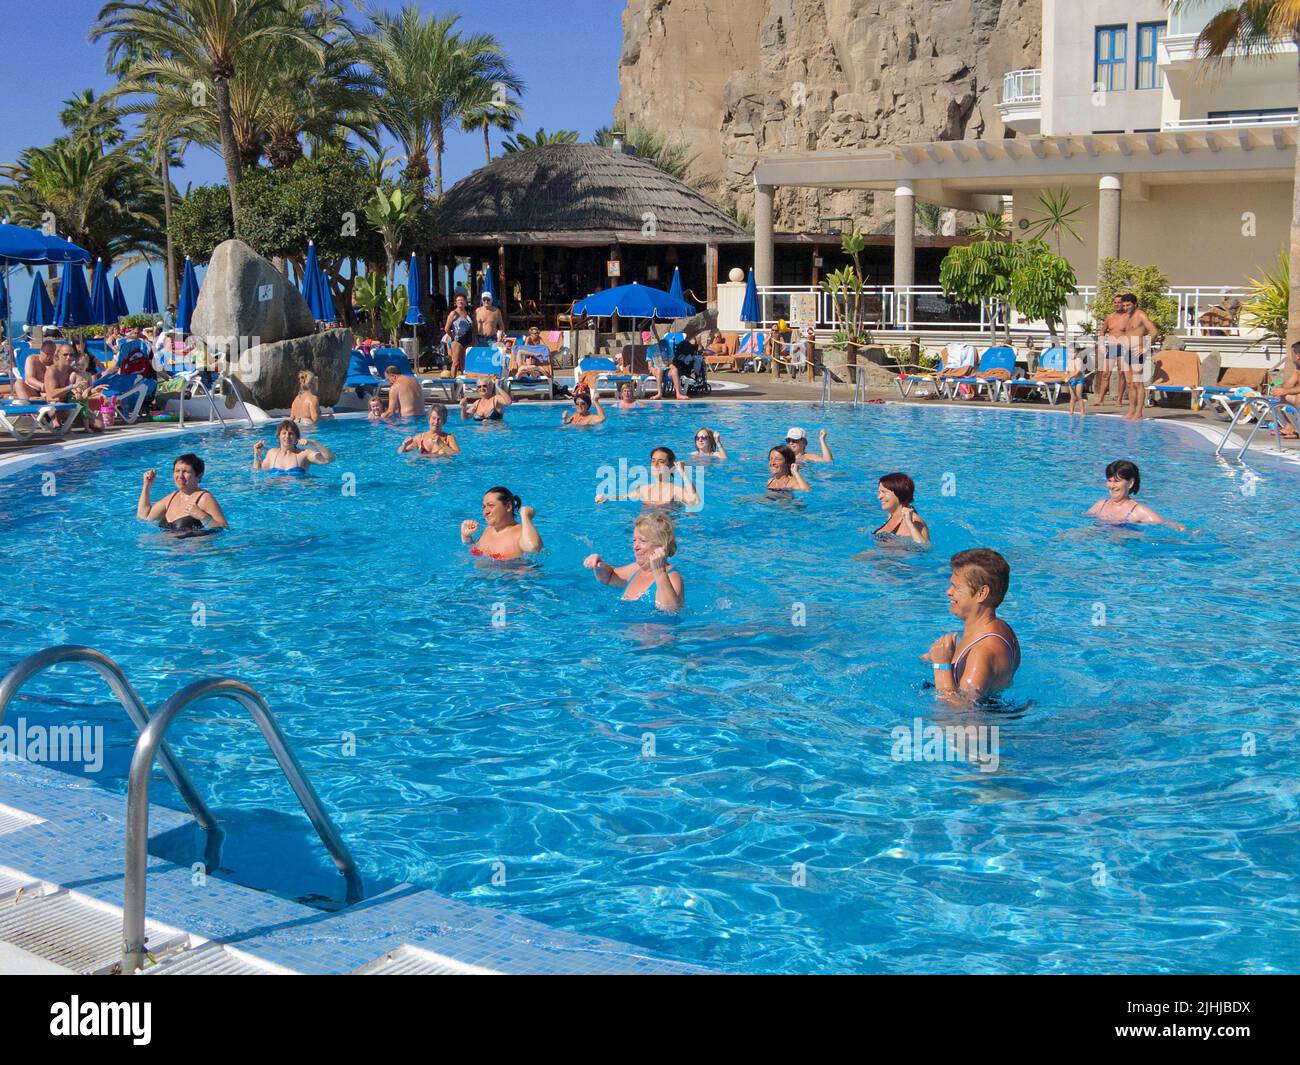 Animation de piscine dans un hôtel, Taurito, Grand canari, îles Canaries, Espagne, Europe Banque D'Images